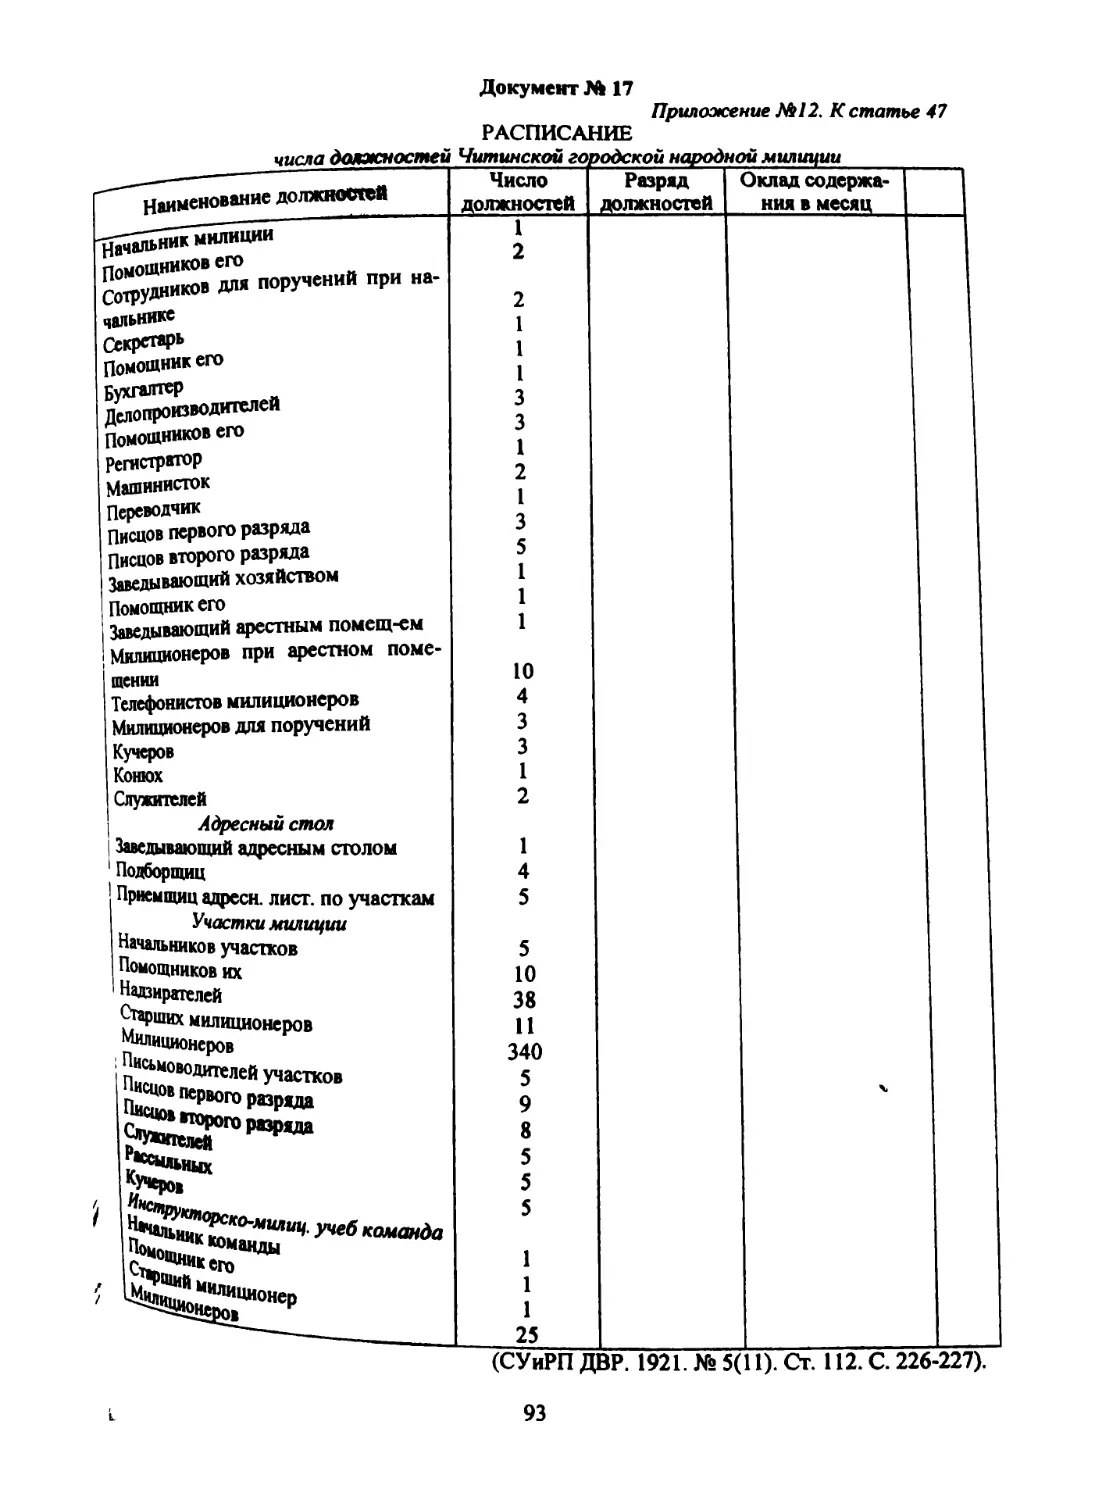 Документ № 17 Приложение № 12 к. ст. 47 «Положения...»: «Расписание числа должностей Читинской городской народной милиции»